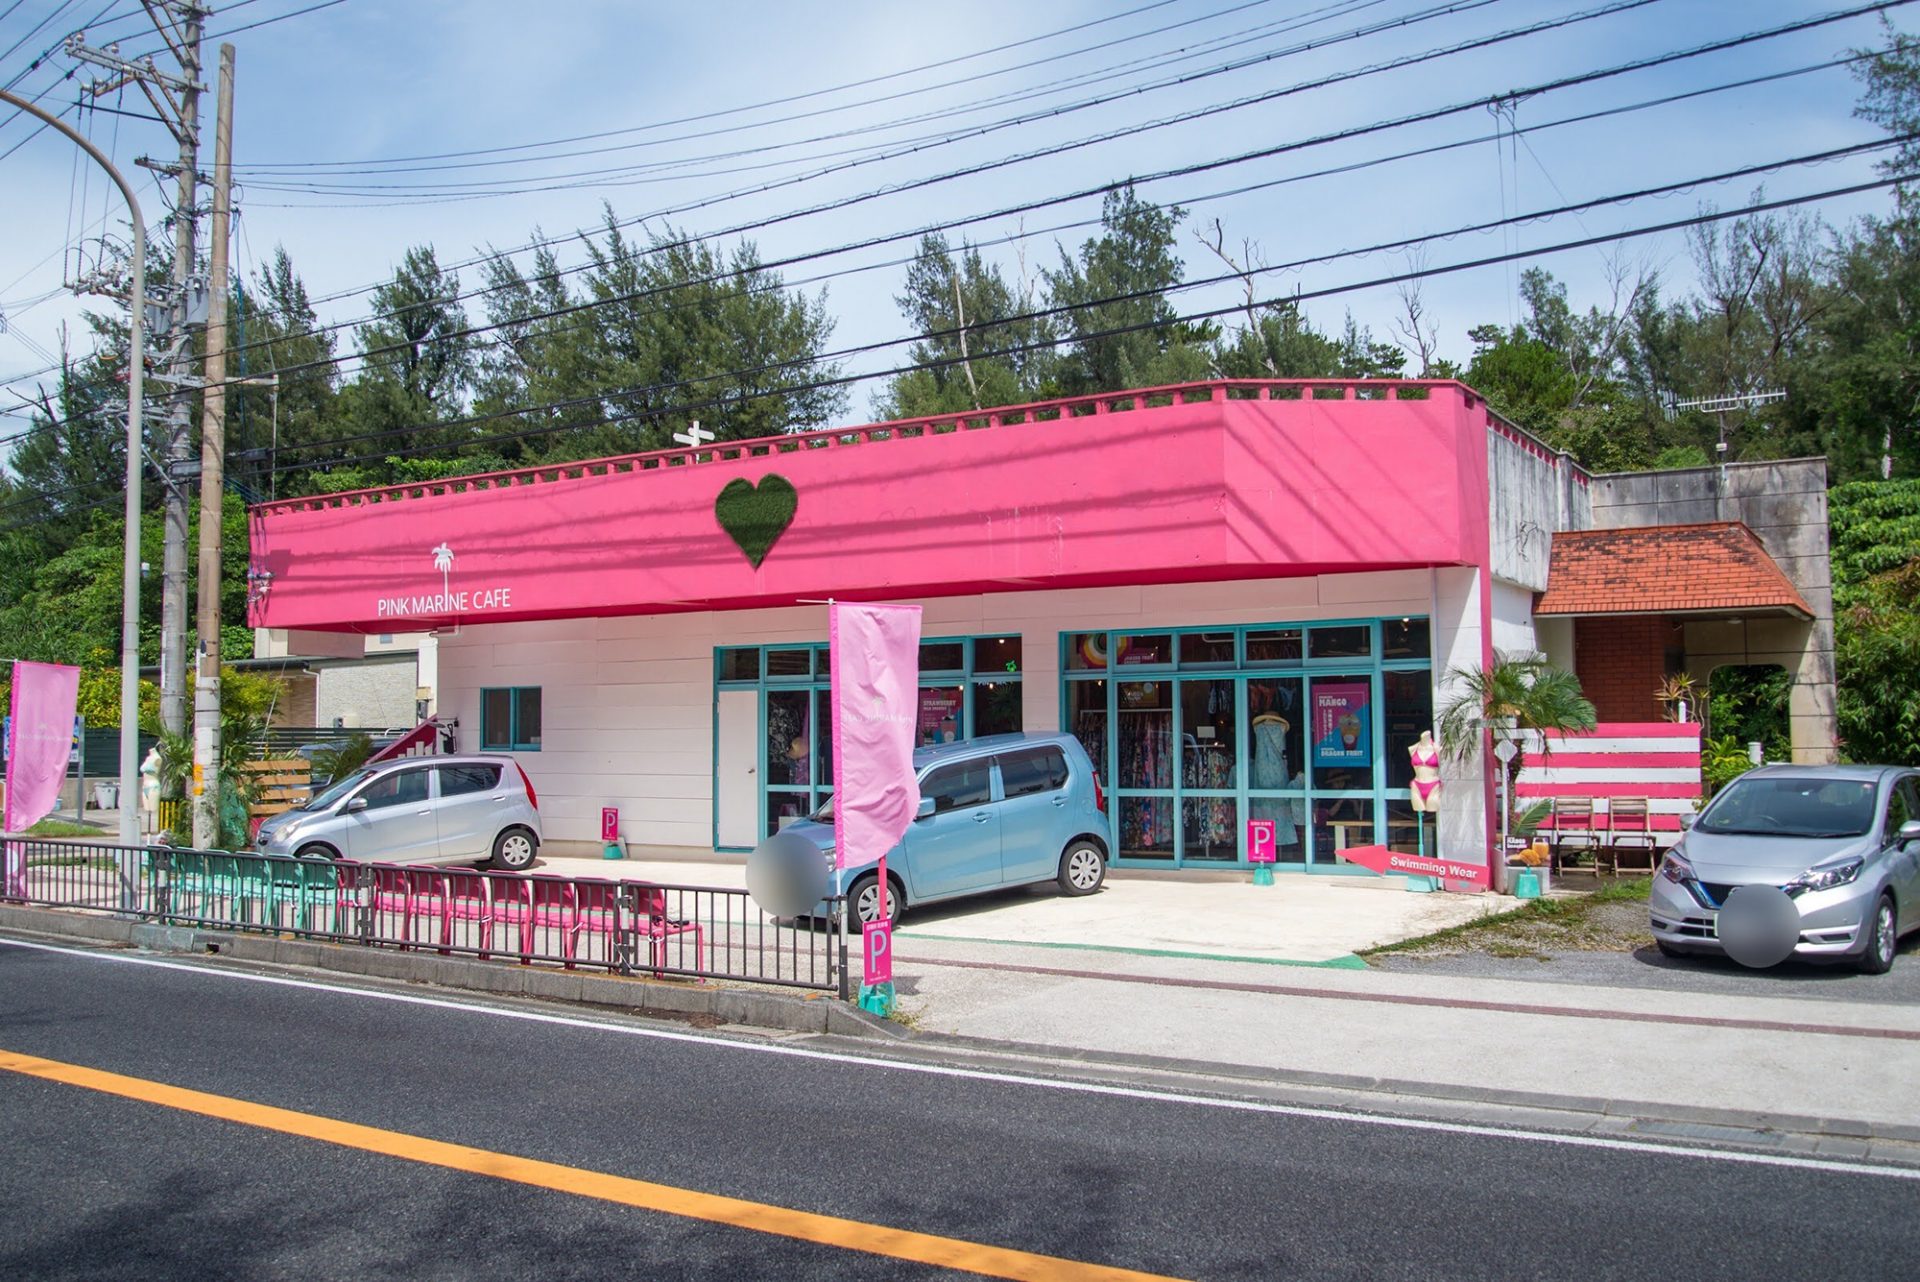 写真映えすること間違いなし 沖縄の かわいい が詰まったお店 恩納村の Pink Marine Cafe 沖縄の観光情報はfeel Okinawa